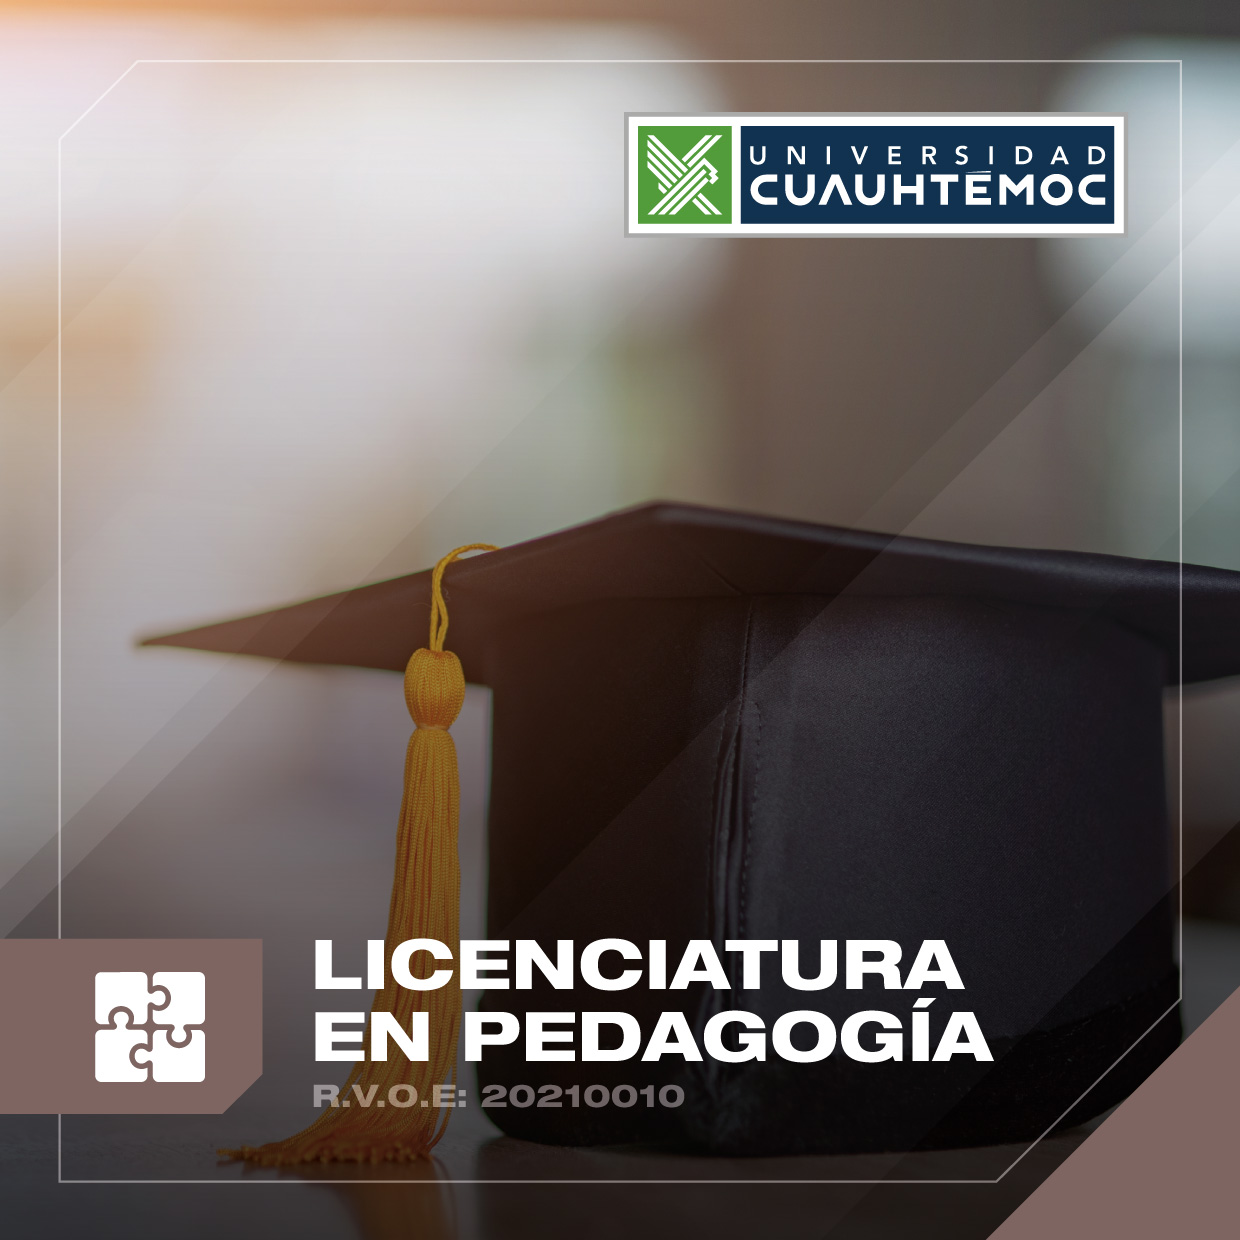 Conoce el objetivo principal de la licenciatura en Pedagogía de la Universidad Cuauhtémoc, una de las mejores escuelas privadas de Querétaro.